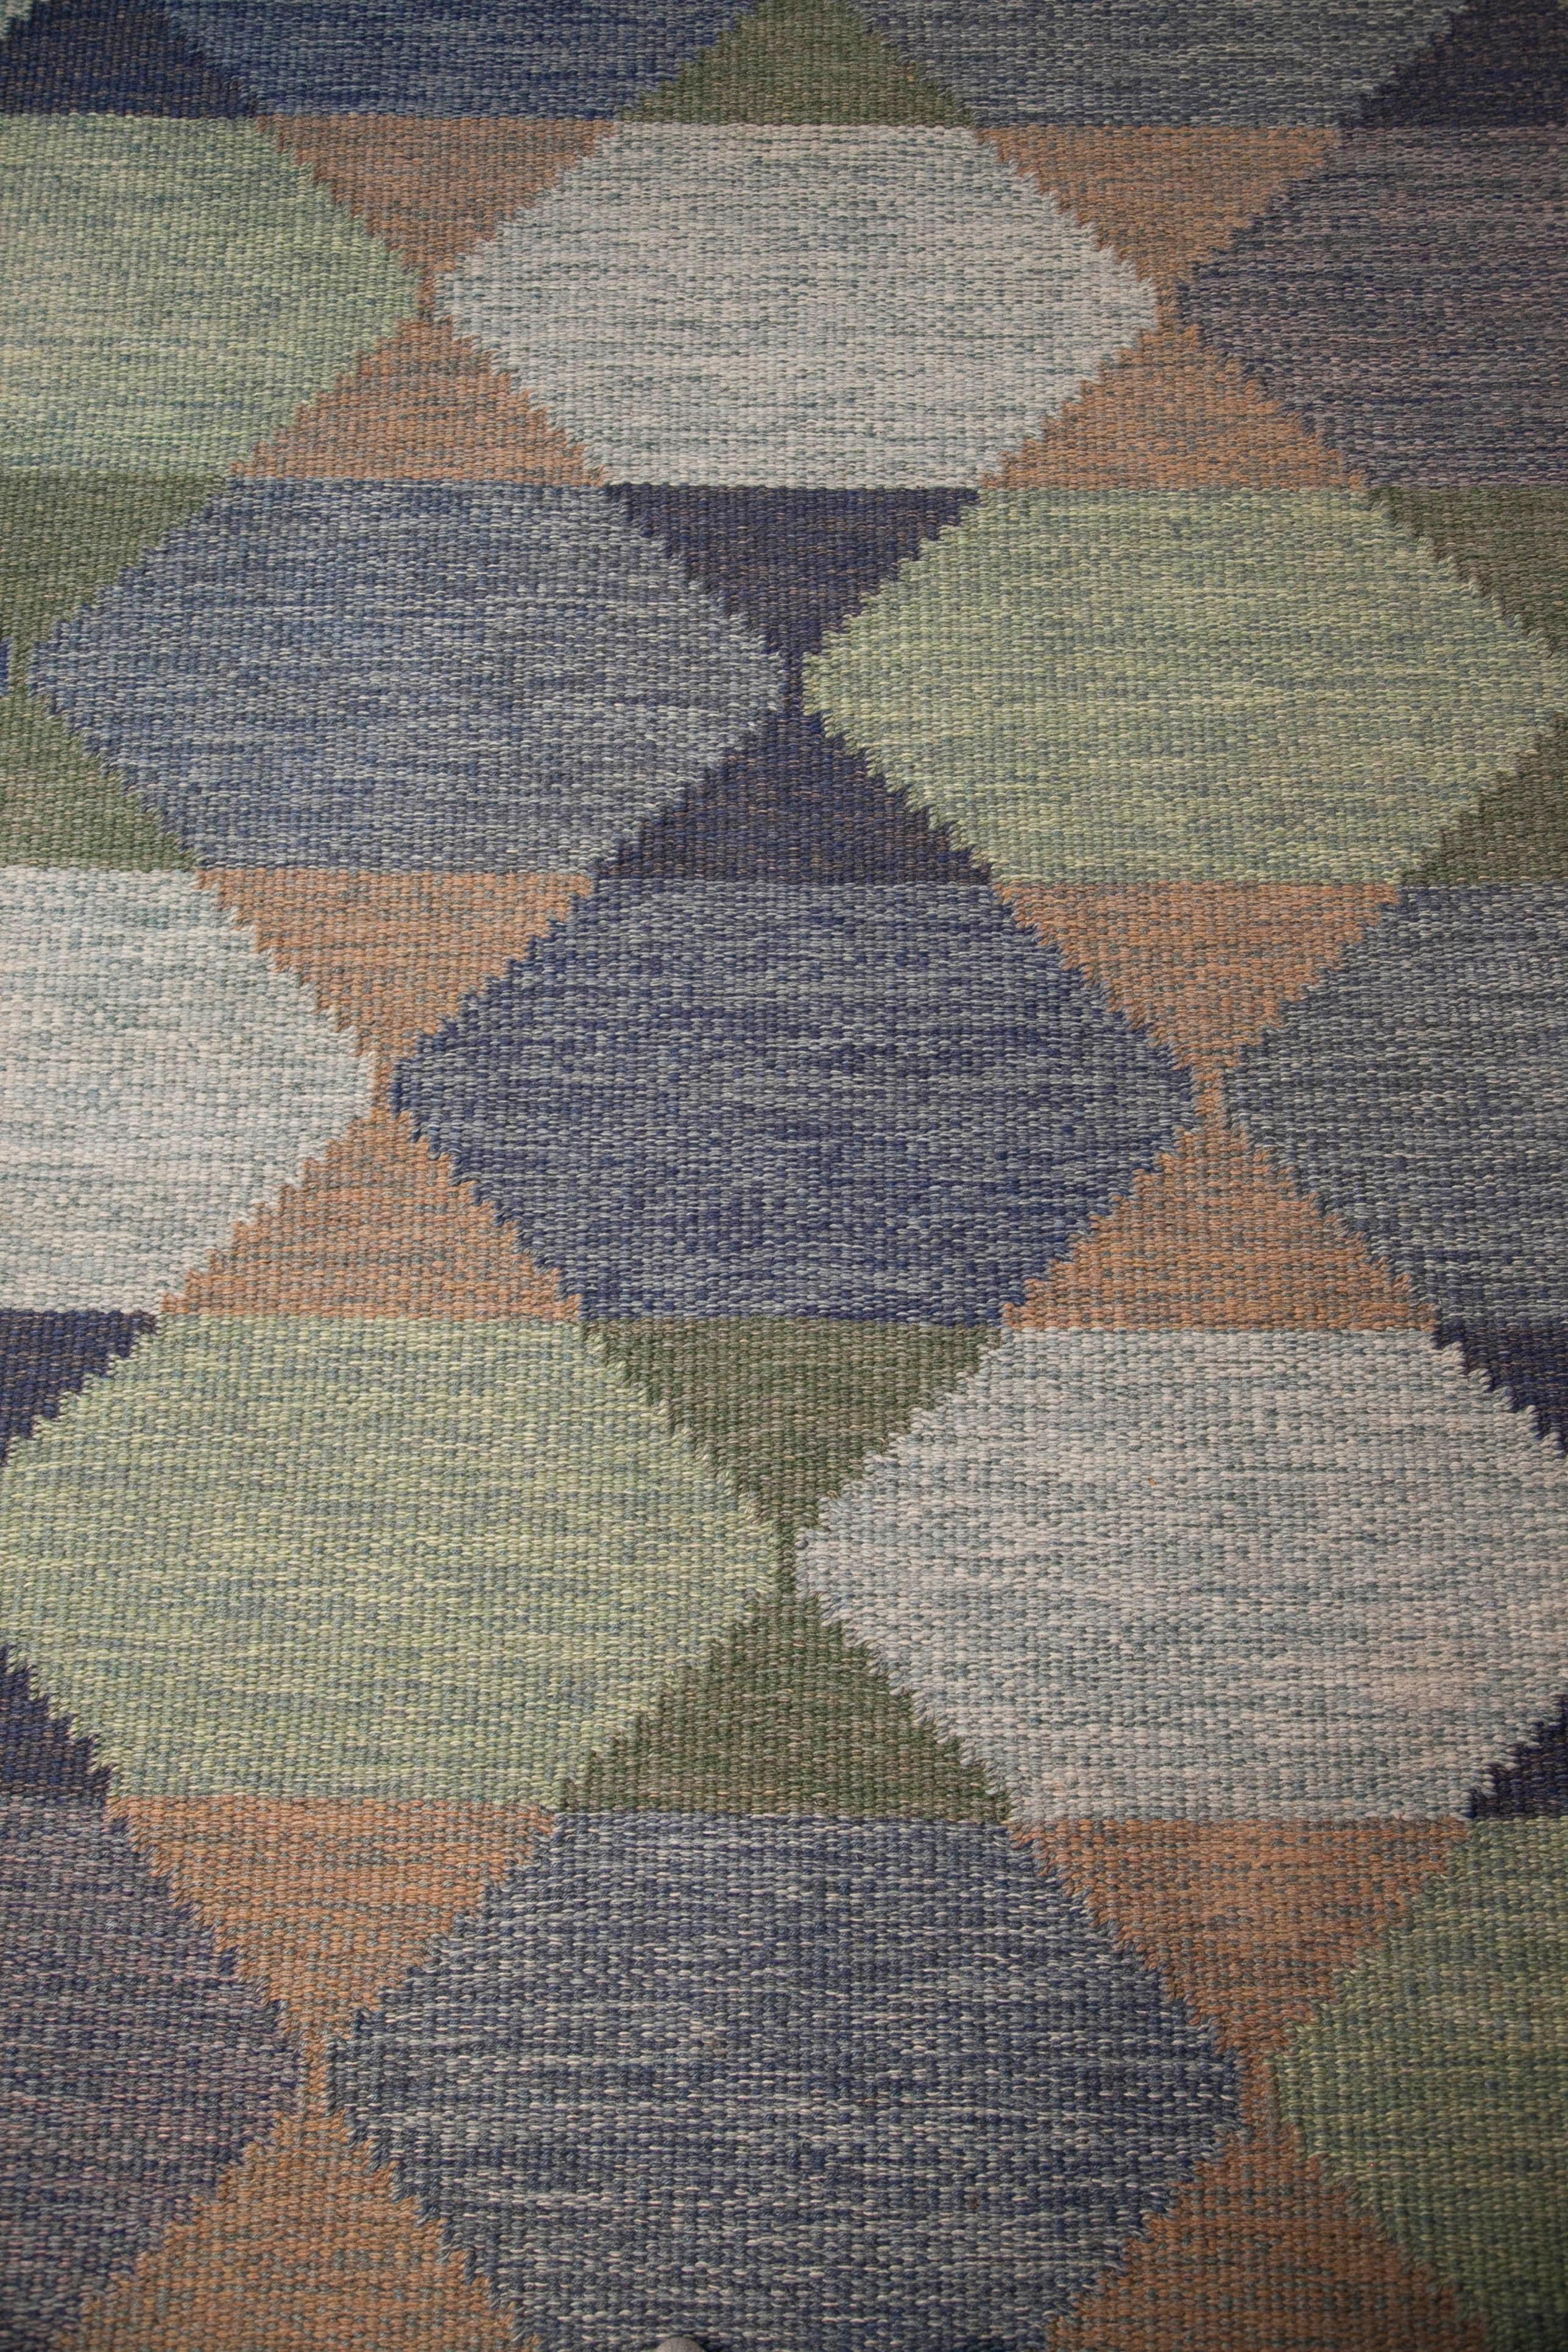 Ulla Parkdahl Swedish Flat-Weave Rug, Signed UP, Sweden, 1960s 3